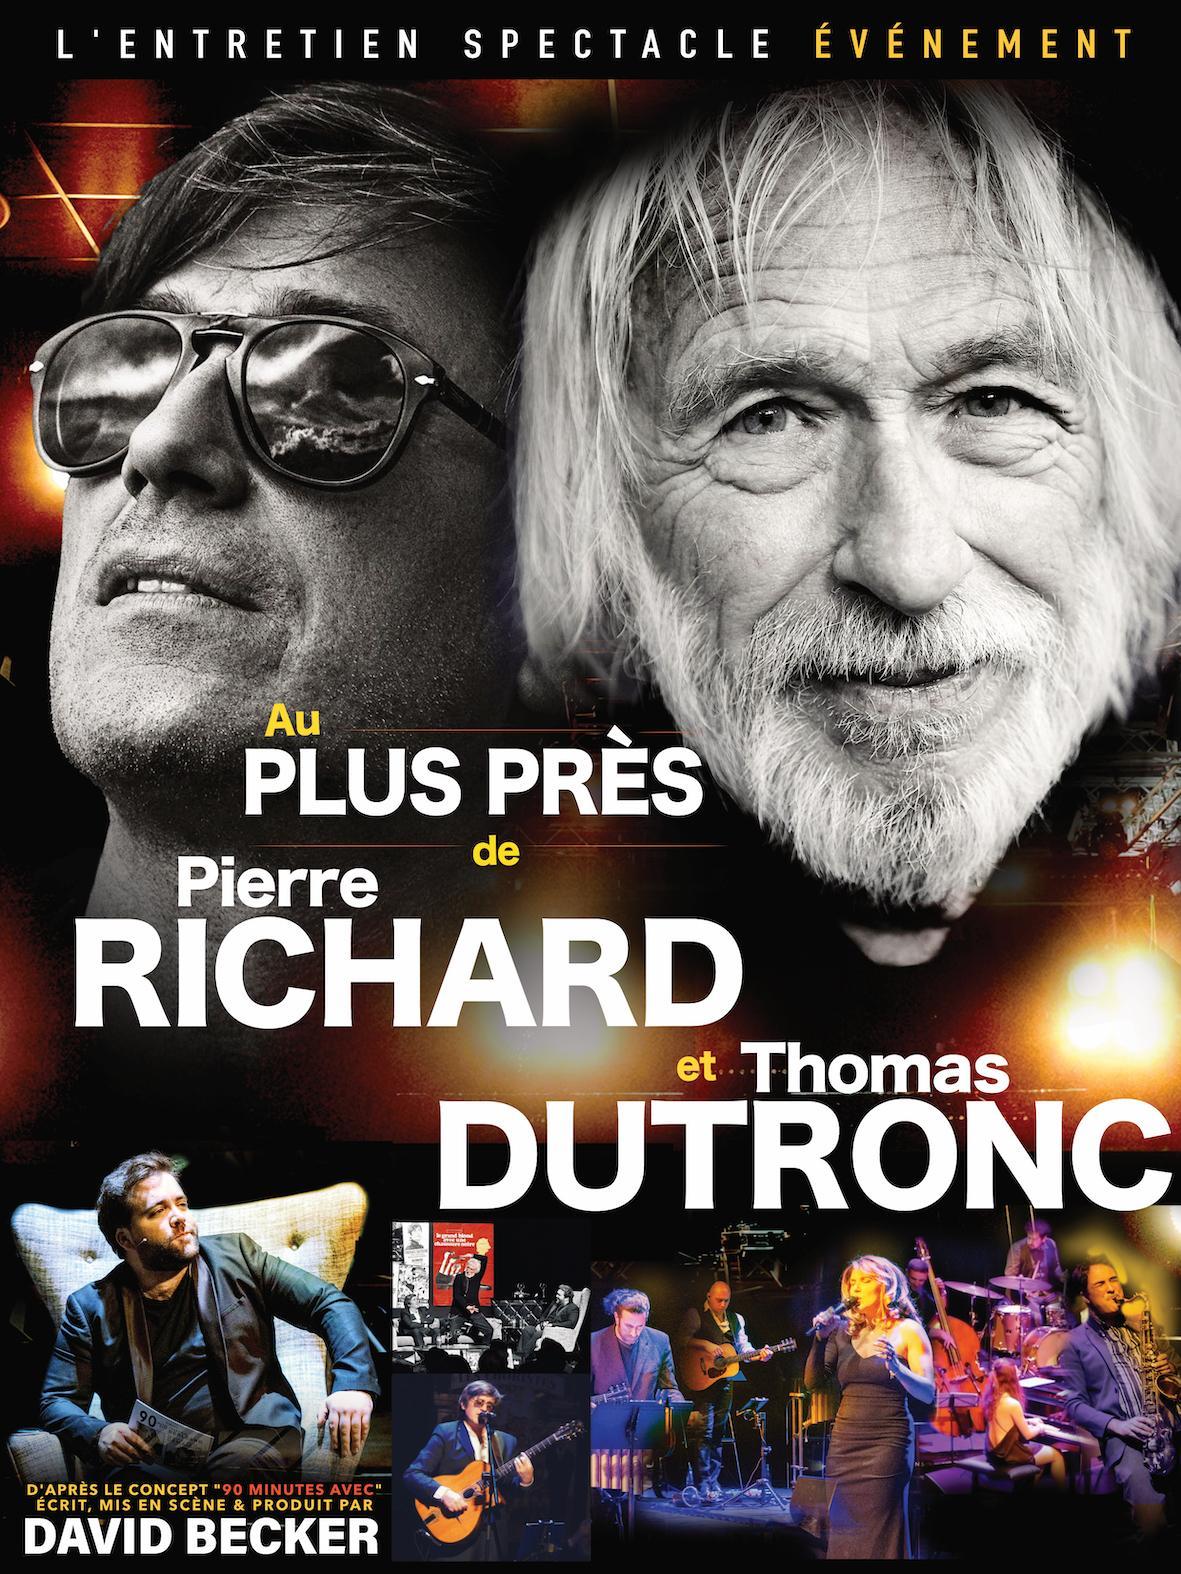 AU PLUS PRES DE P.RICHARD & T. DUTRONC - Le Kabaret - Reims - Tinqueux (51)